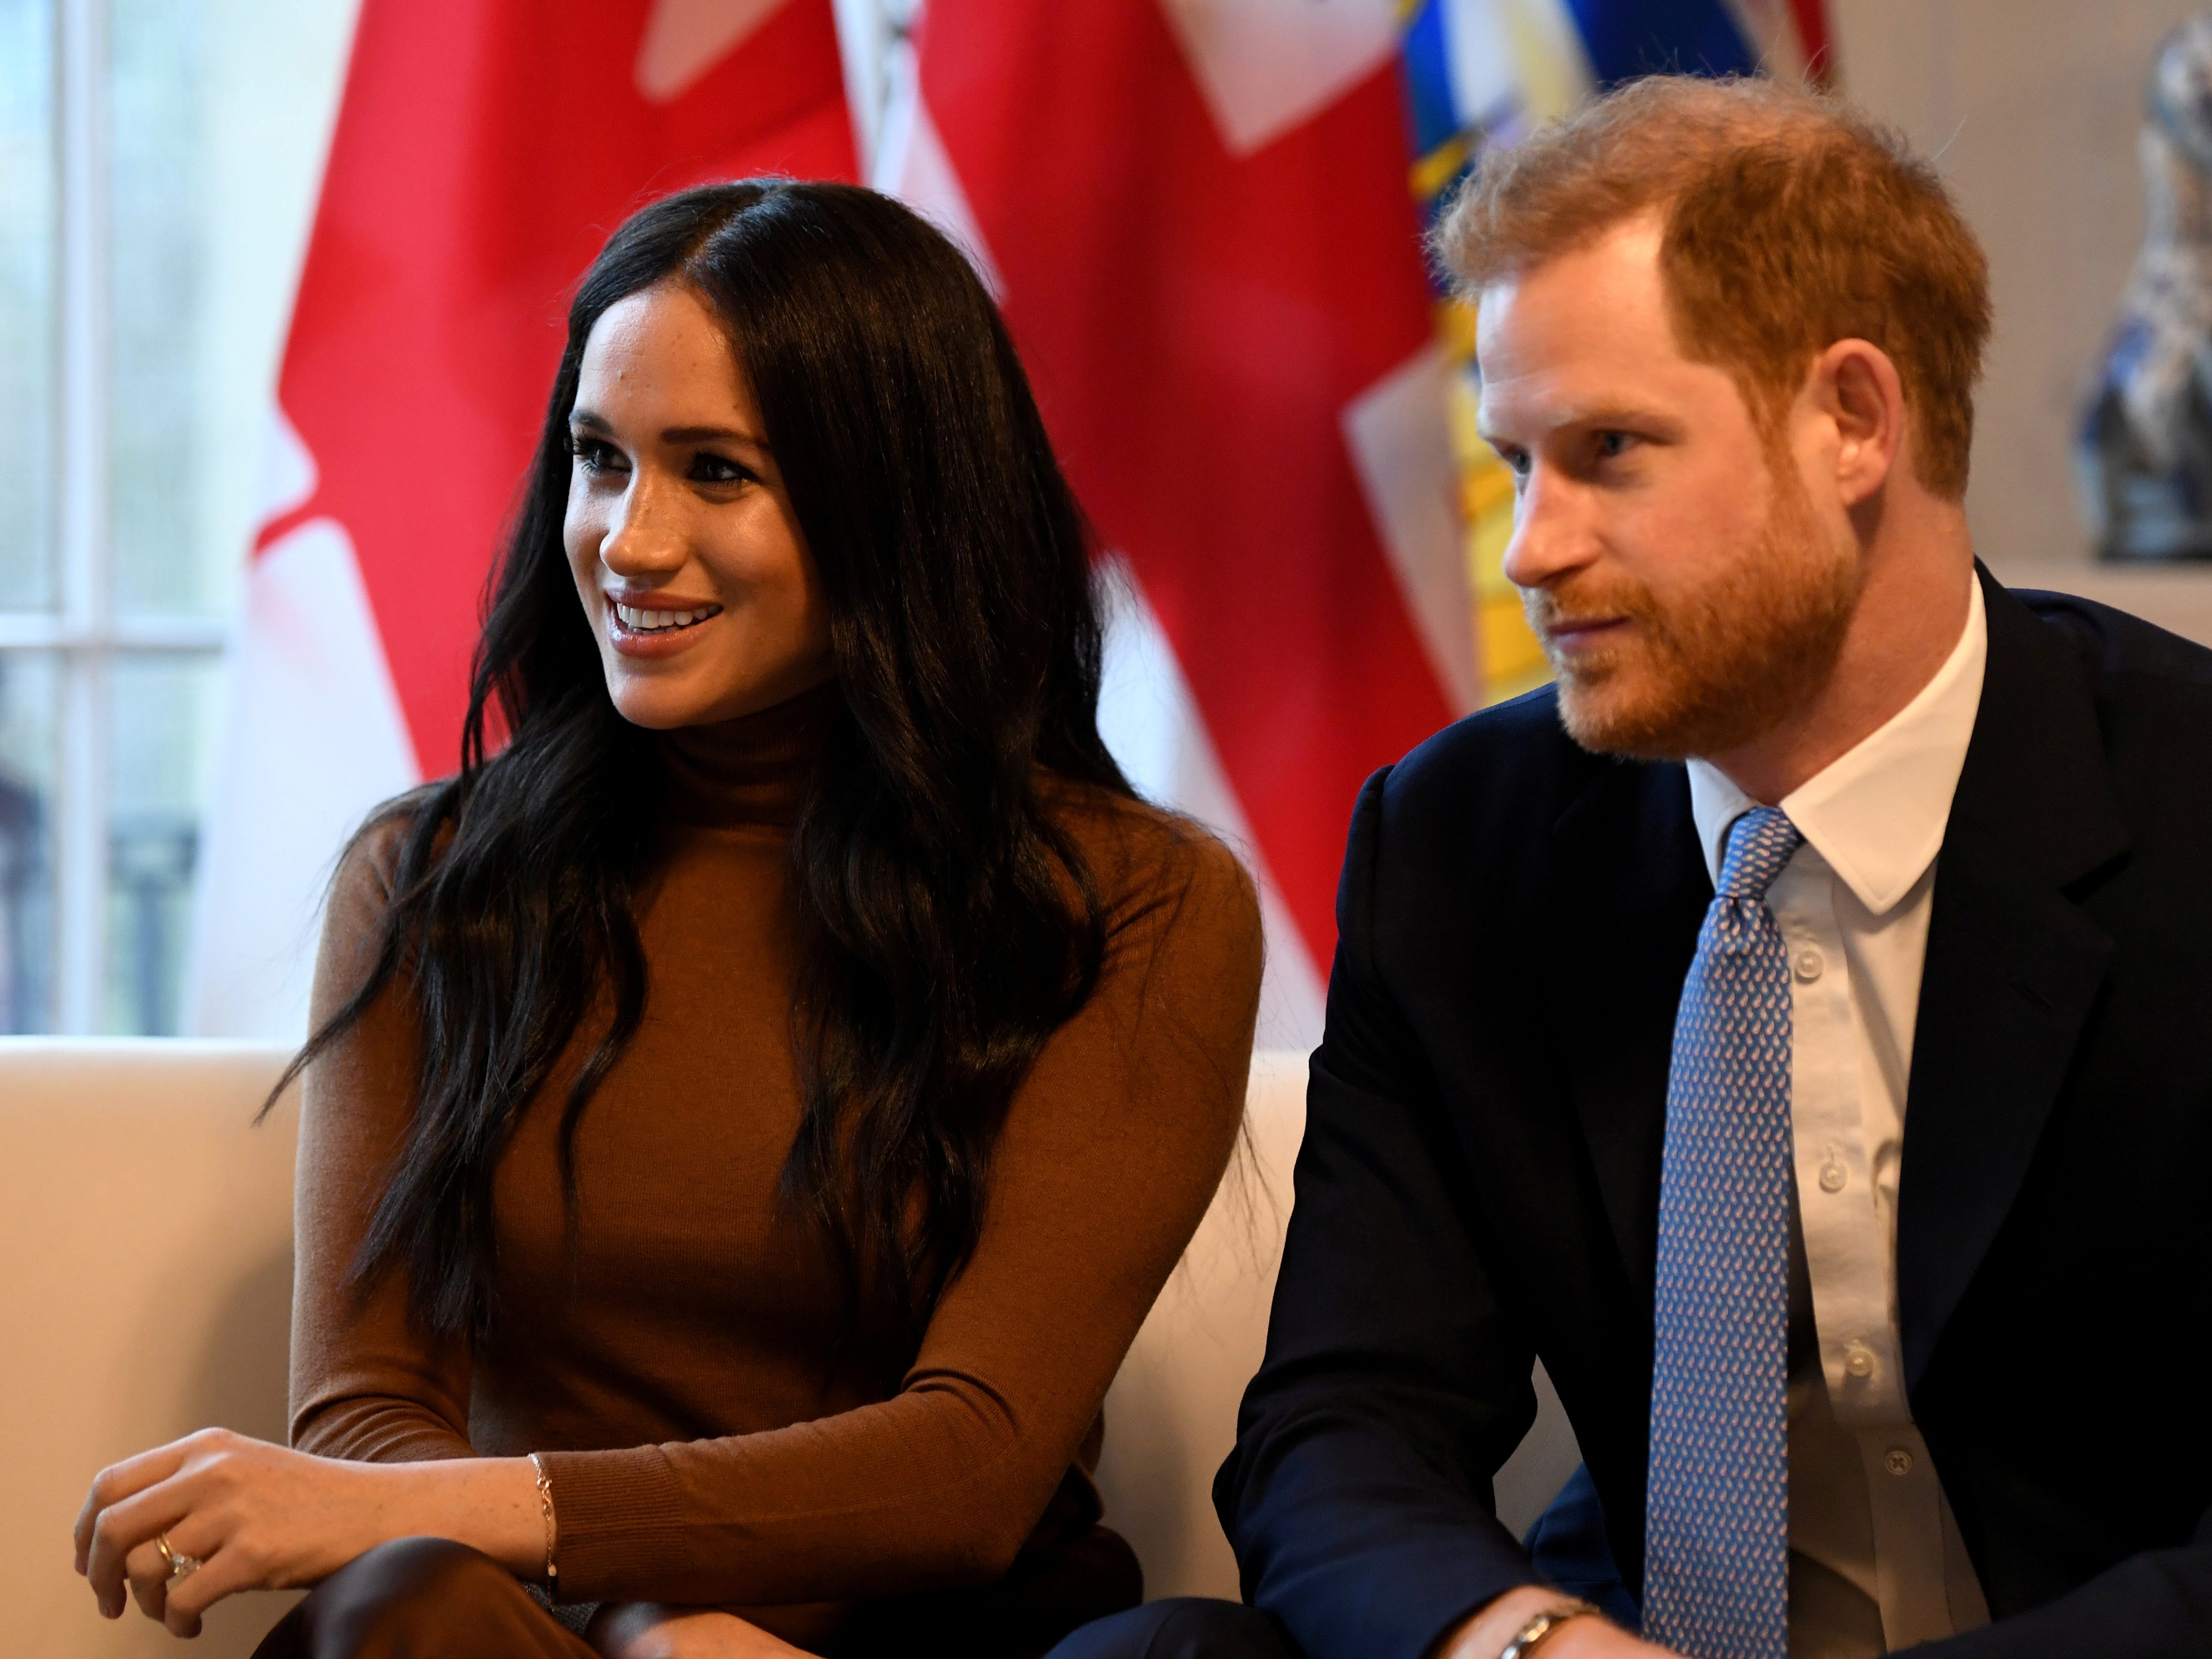 DATEIFOTO: Der britische Prinz Harry und seine Frau Meghan, Herzogin von Sussex besuchen das Canada House in London, Großbritannien, 7. Januar 2020. Daniel Leal-Olivas/Pool via REUTERS